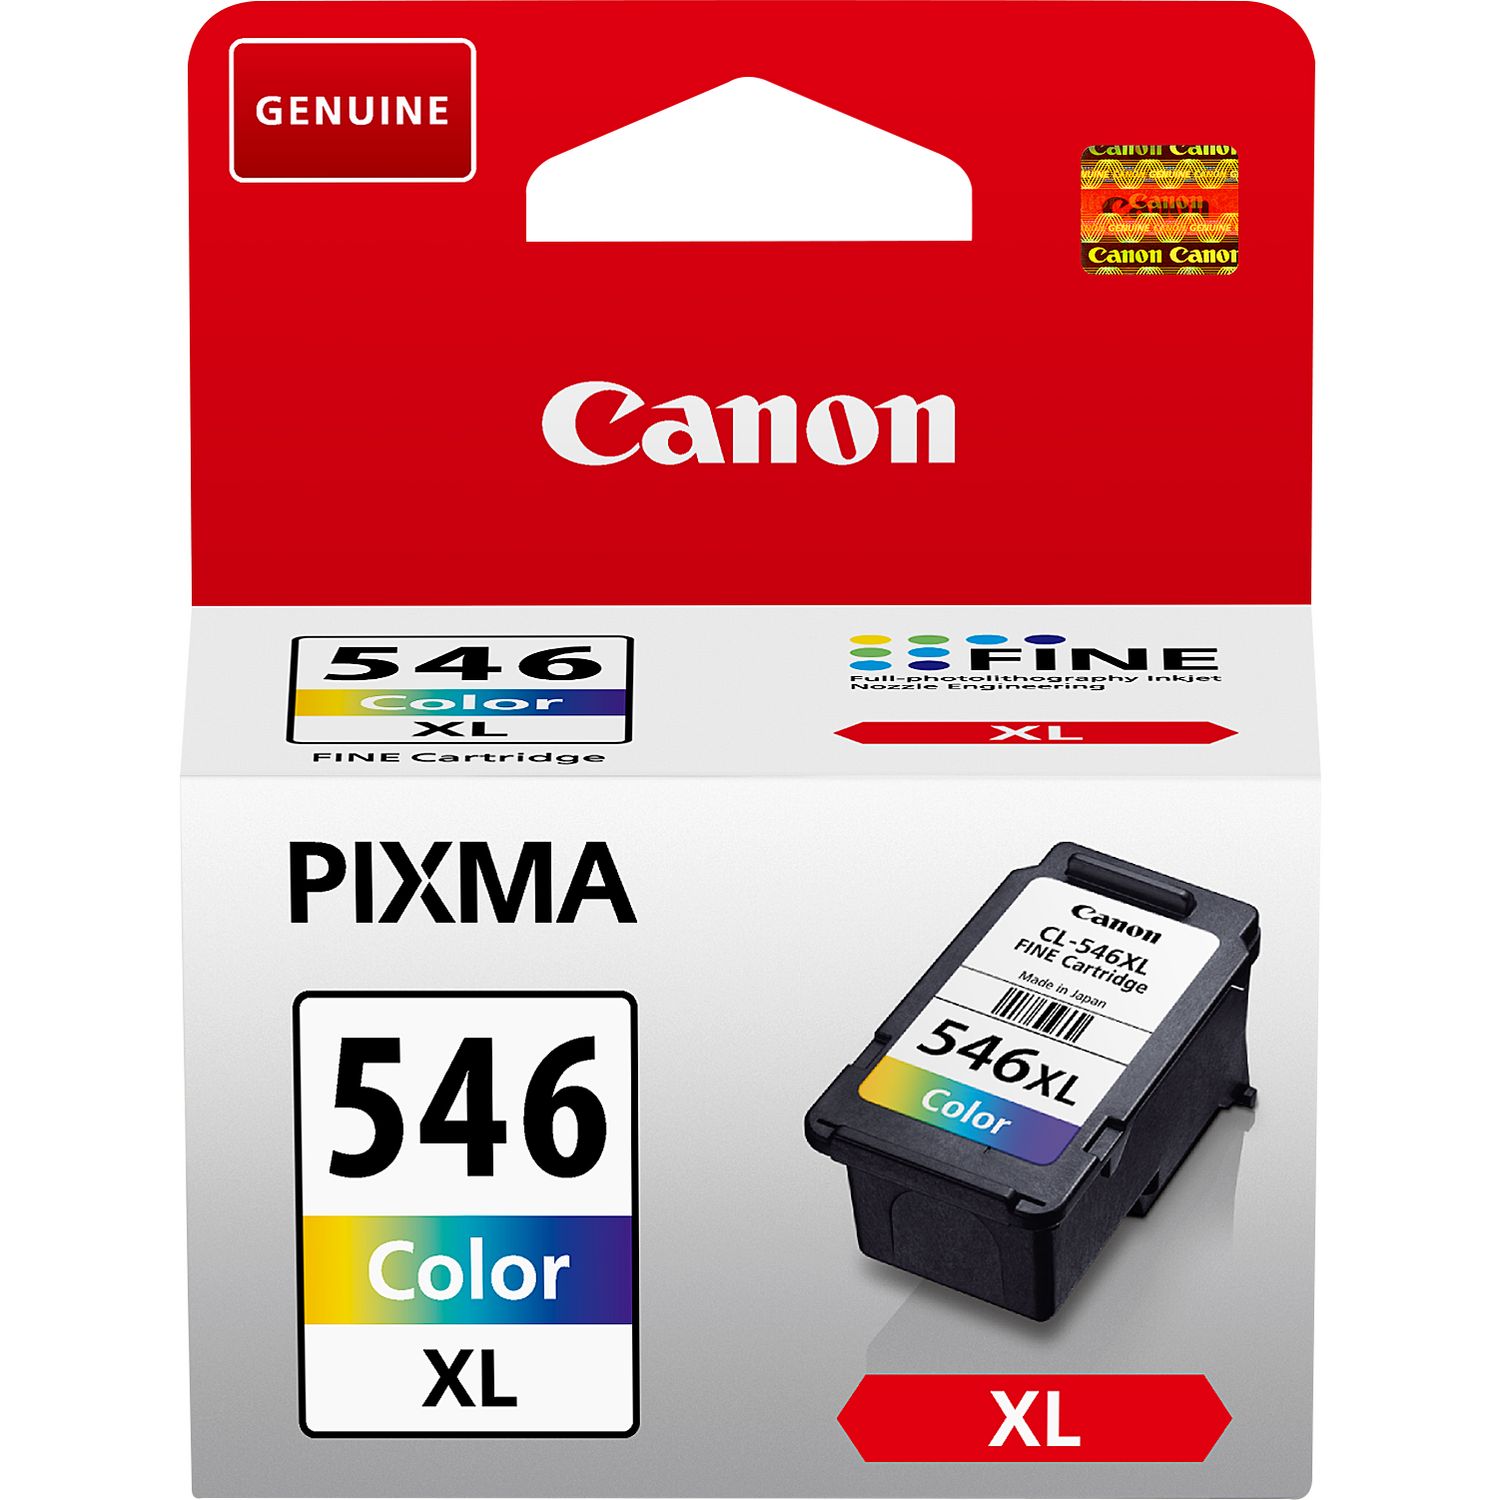 Cartouche d'encre Compatible Canon PG-545 CL-546 XL compatible